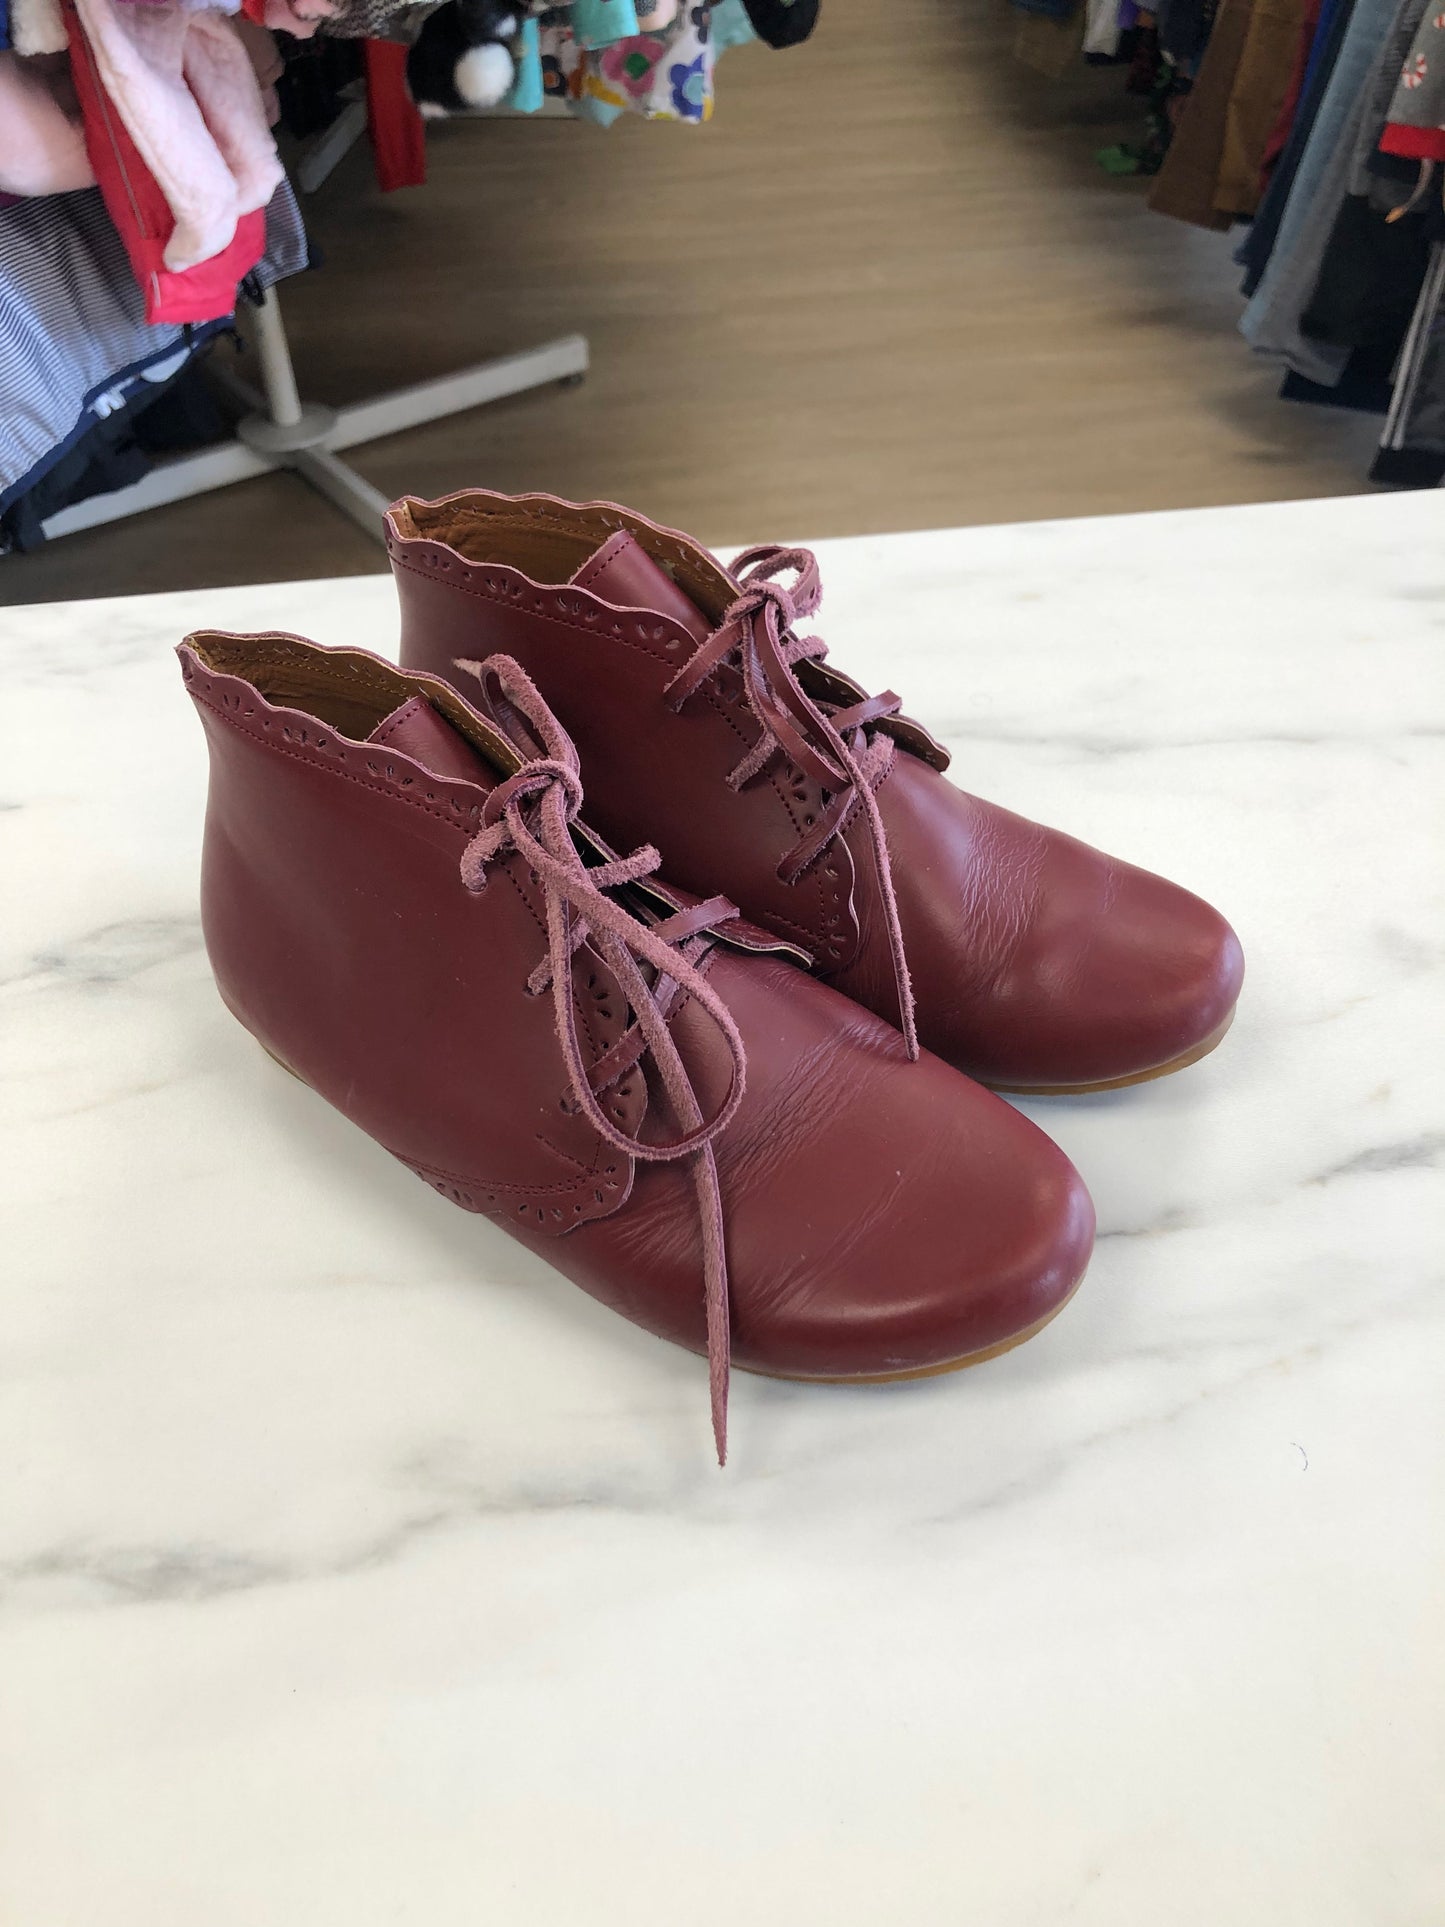 Adelisa & Co 1 Burgundy Shoes/Boots